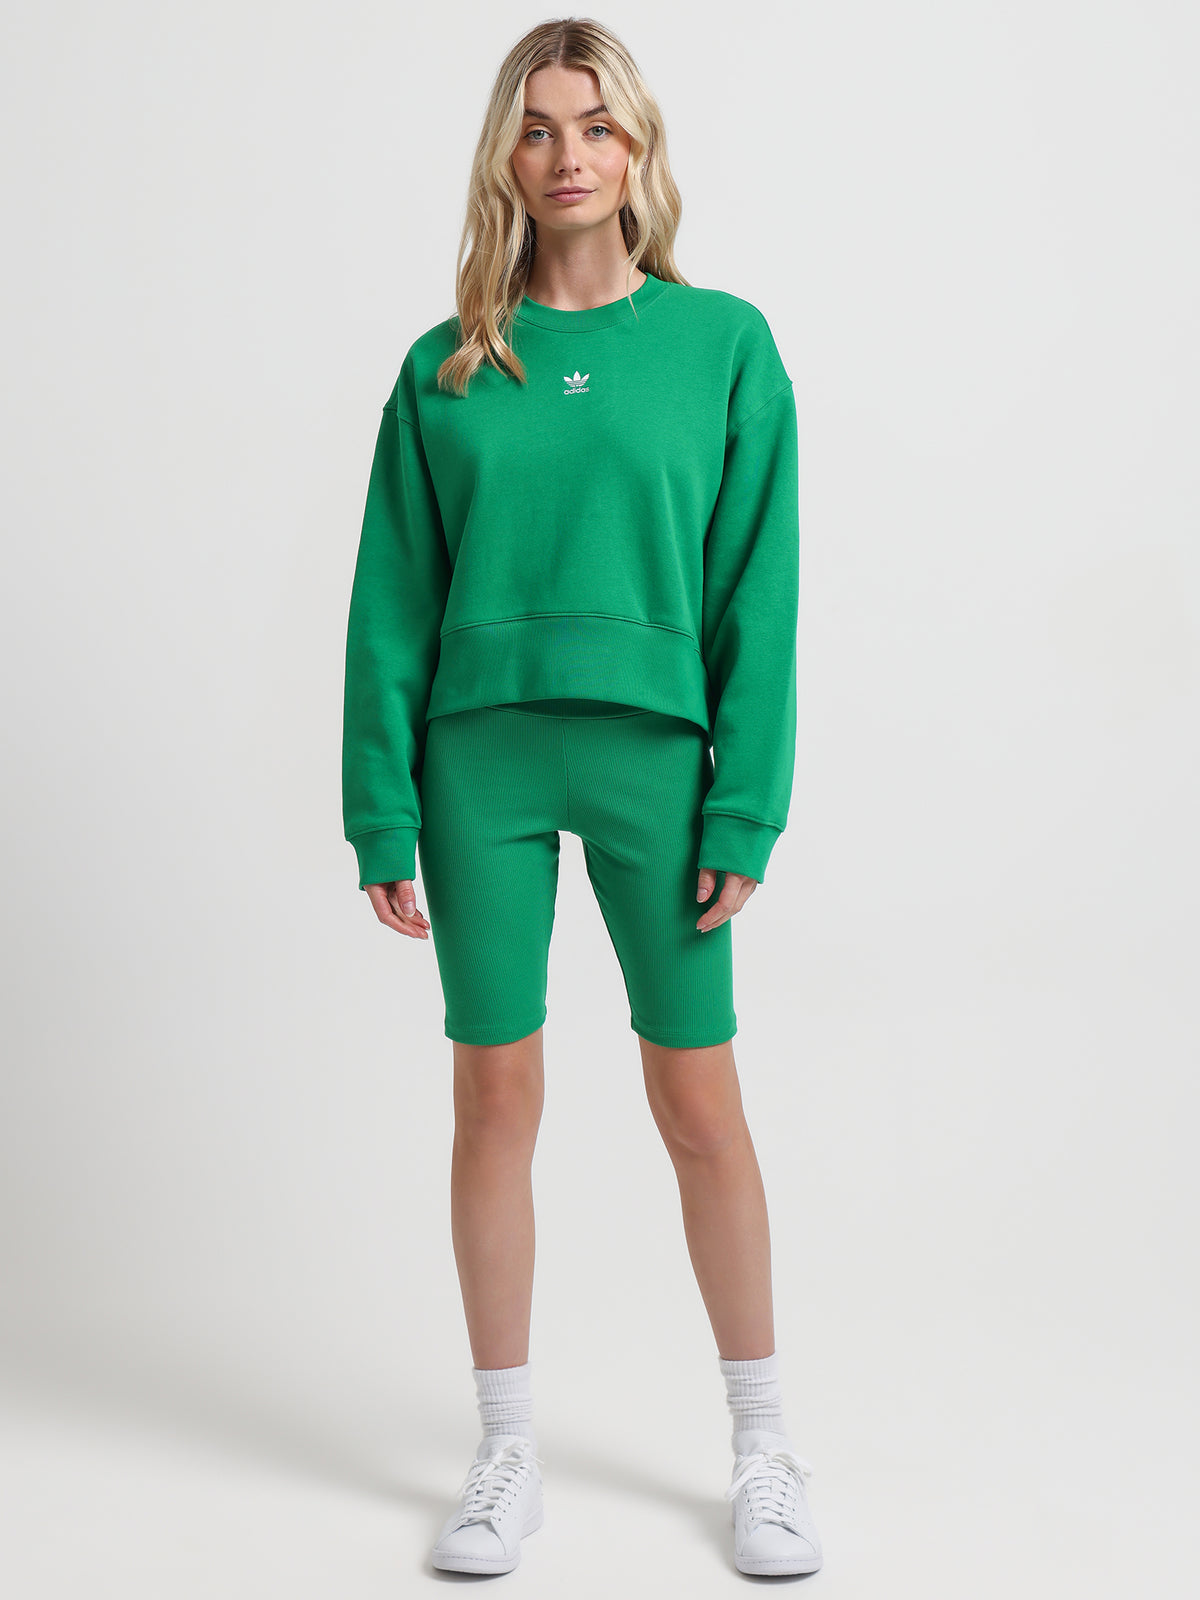 Adicolor Essentials Sweatshirt in Green